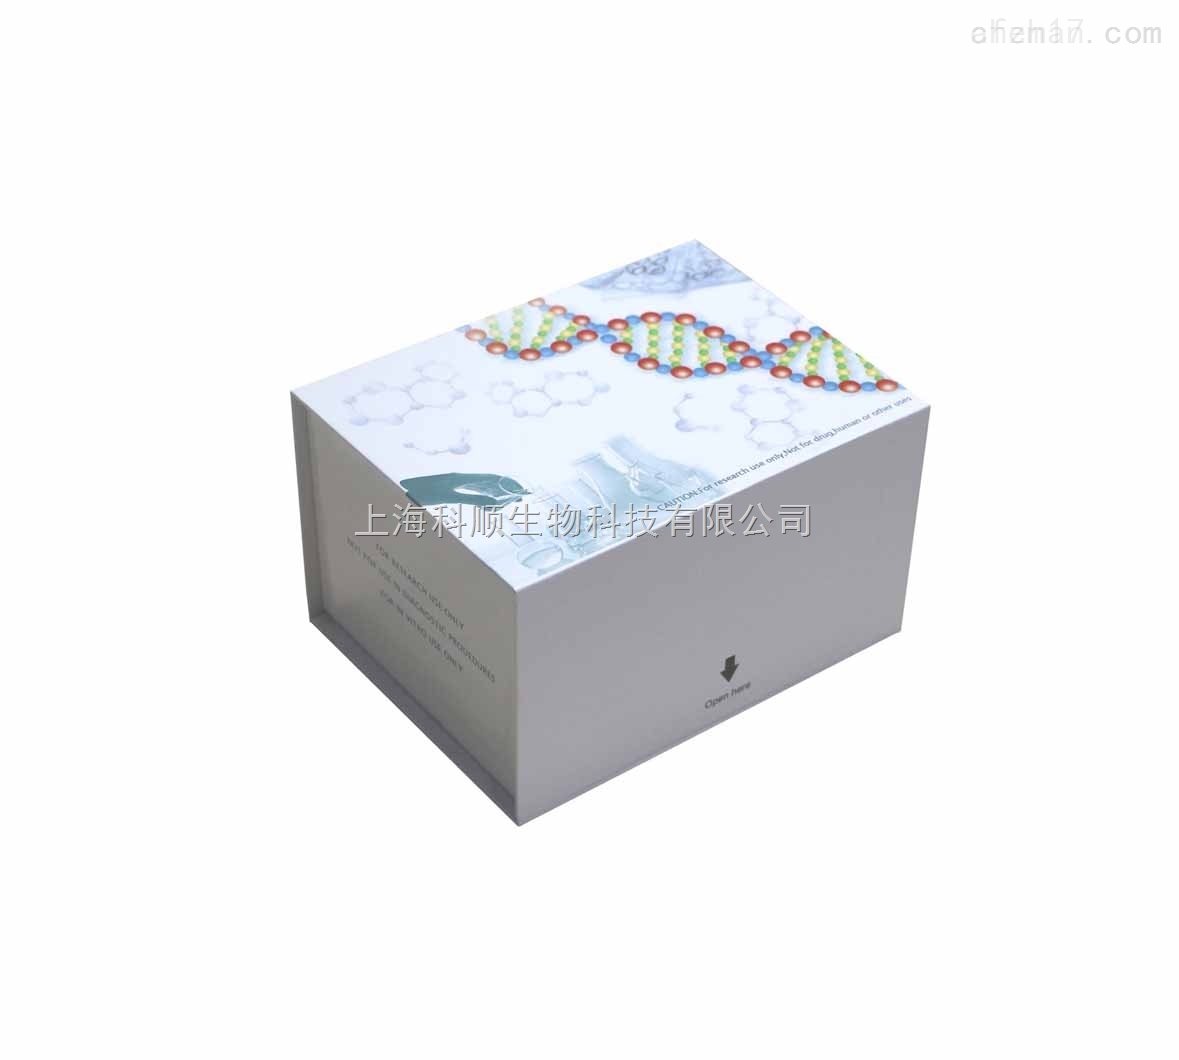 猪前列腺素F2αPGF2α检测试剂盒图片